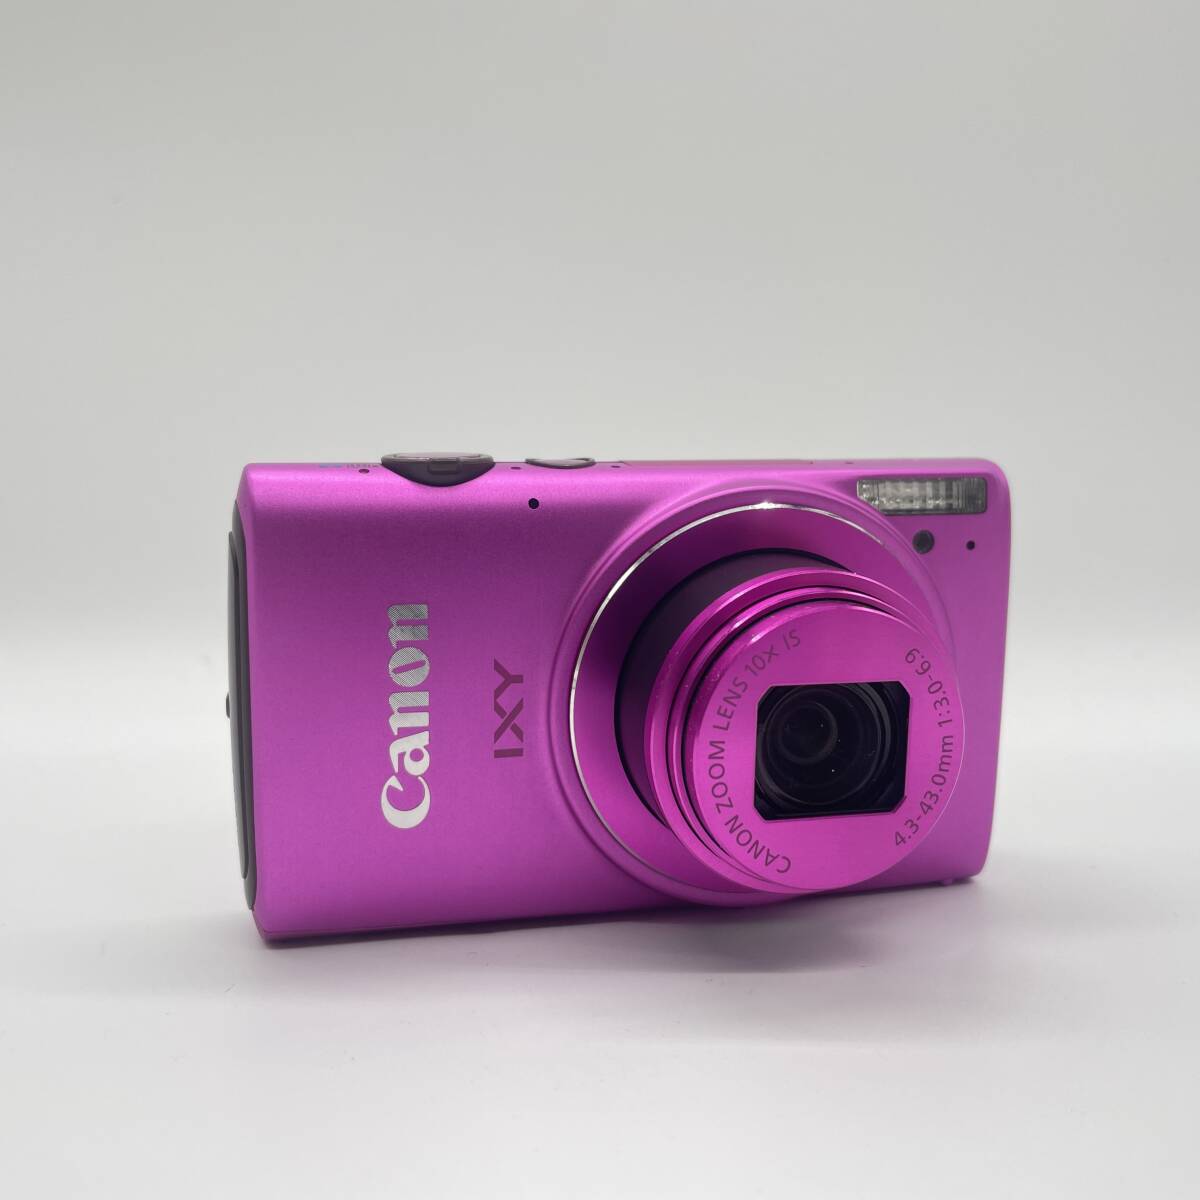 【動作確認済み】Canon IXY 610F PINK コンデジ デジカメ デジタルカメラ シャッター&フラッシュ動作OKの画像2